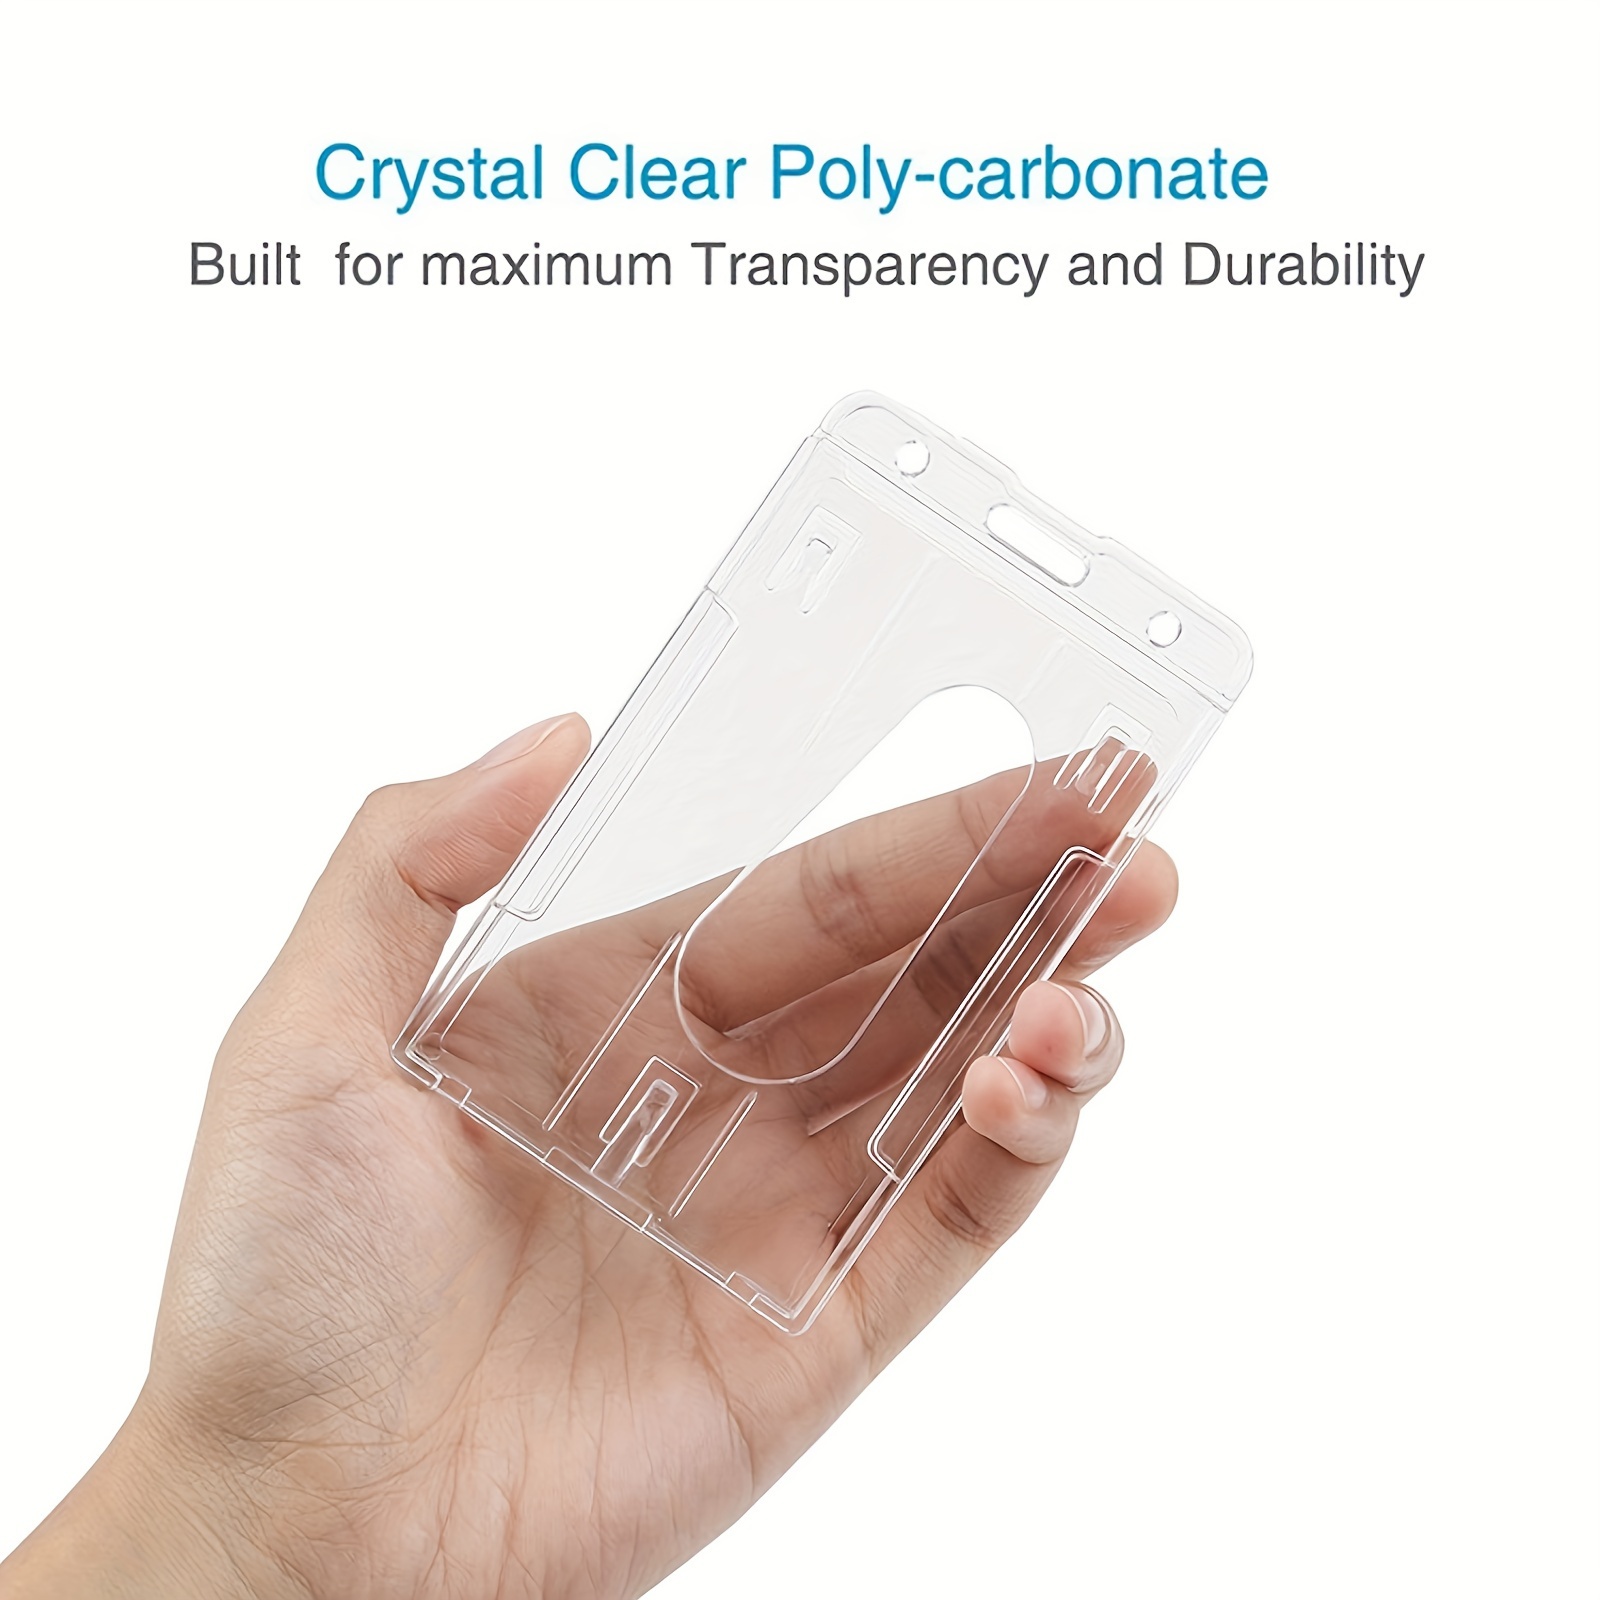 Nuevo Soporte De Plástico Duro Transparente Para Tarjetas De Identificación  Doble, Vertical Y Claro, Tamaño 10x6cm